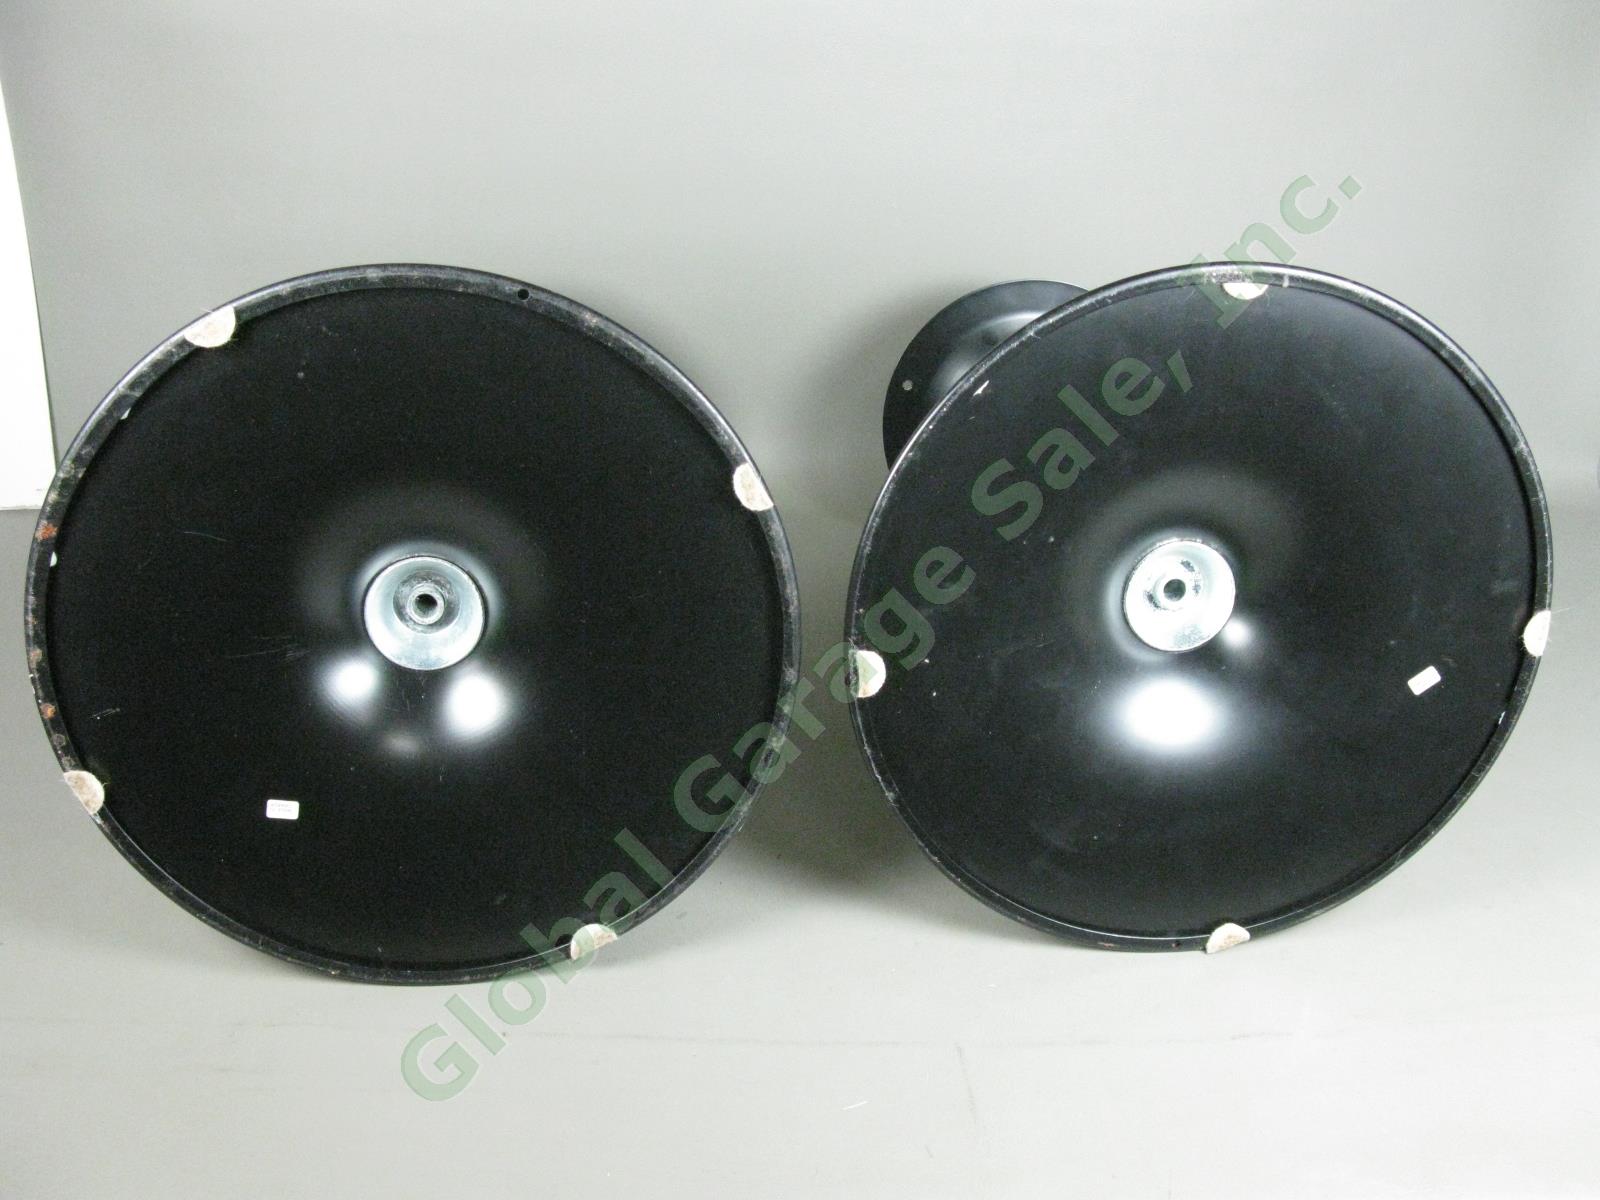 Bose 901 Series V Speaker Stands Black Tulip Pedestal 18" Tall 4-Holes No Res!! 5